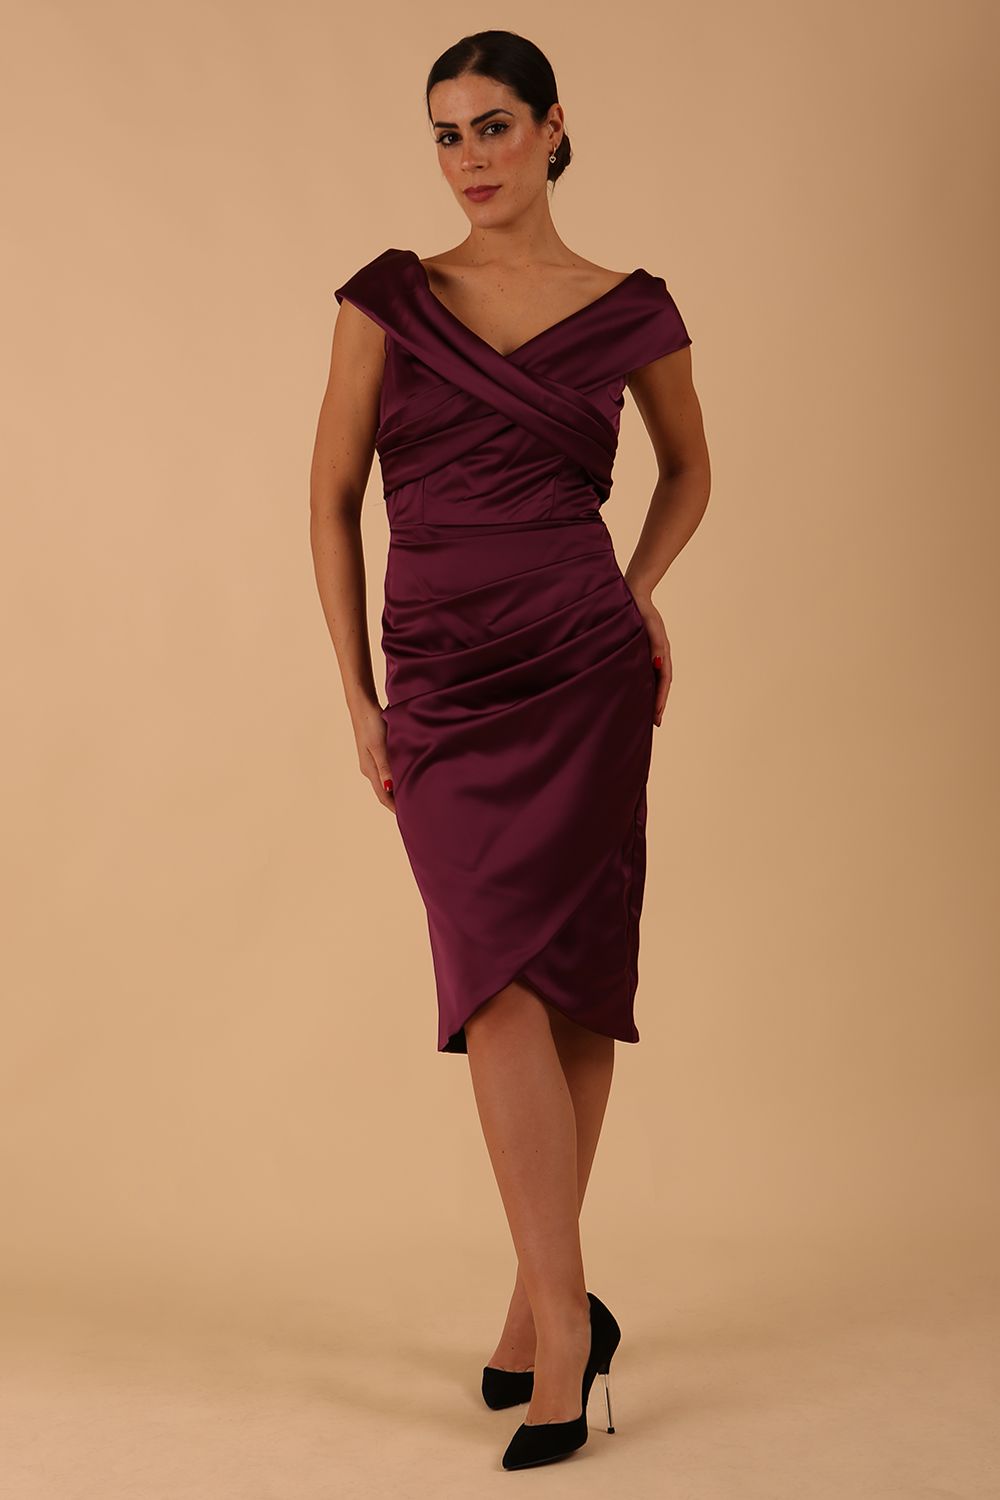 model is wearing diva catwalk casa blanca satin burgundy pencil dress off shoulder design front